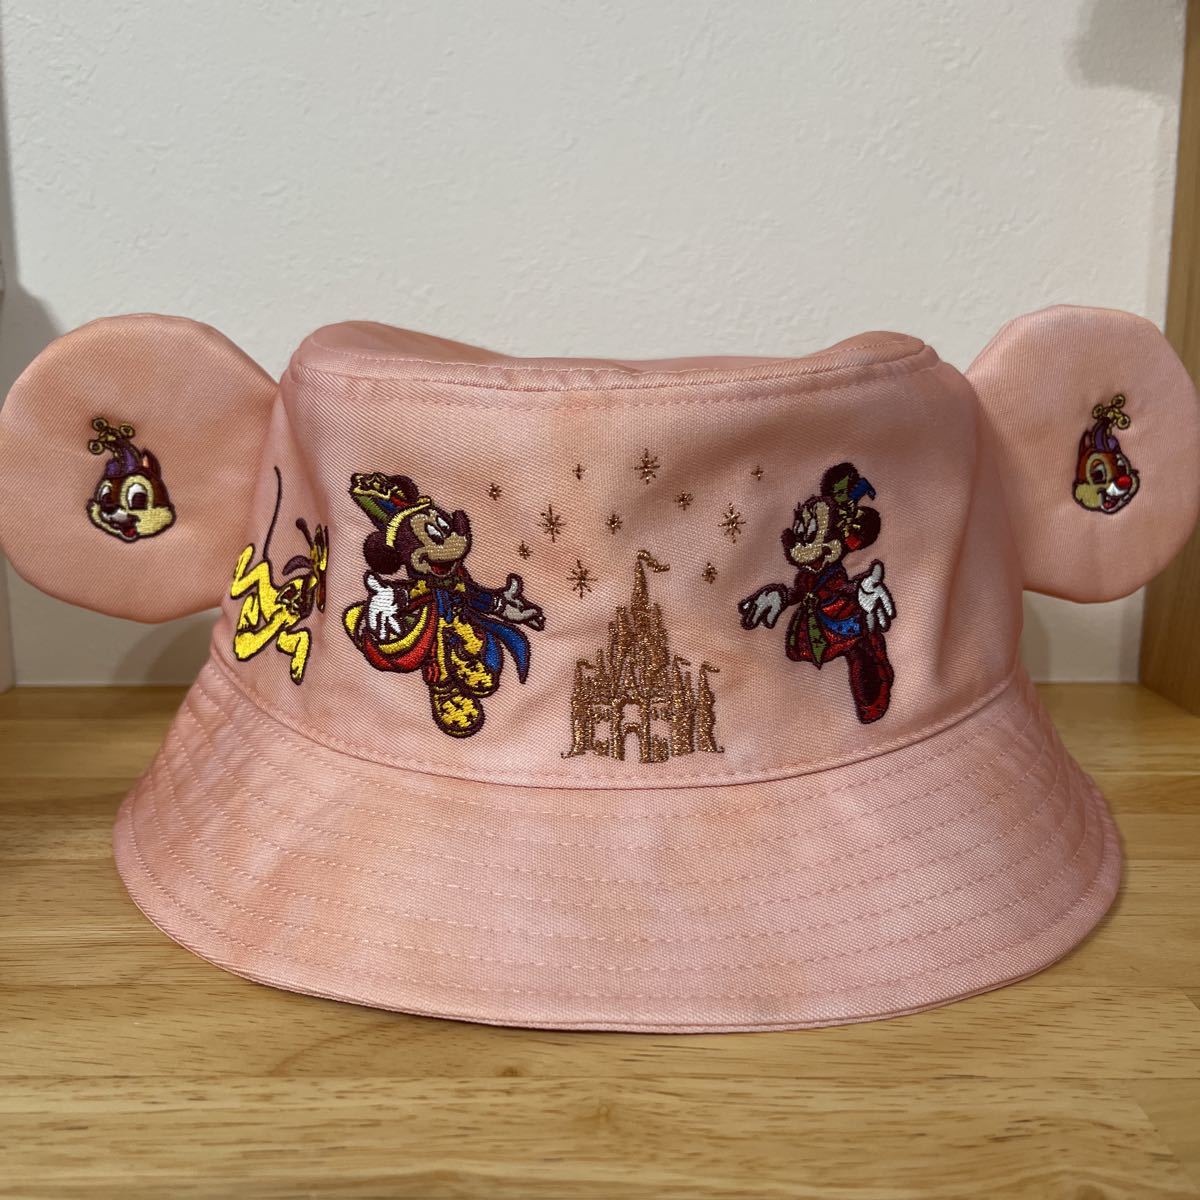 即決 送料無料 新品 ディズニーランド 40周年 ハット ピンク ミッキー ミニー チップとデール/イヤーハット 帽子 キャップ リゾート 品切れ